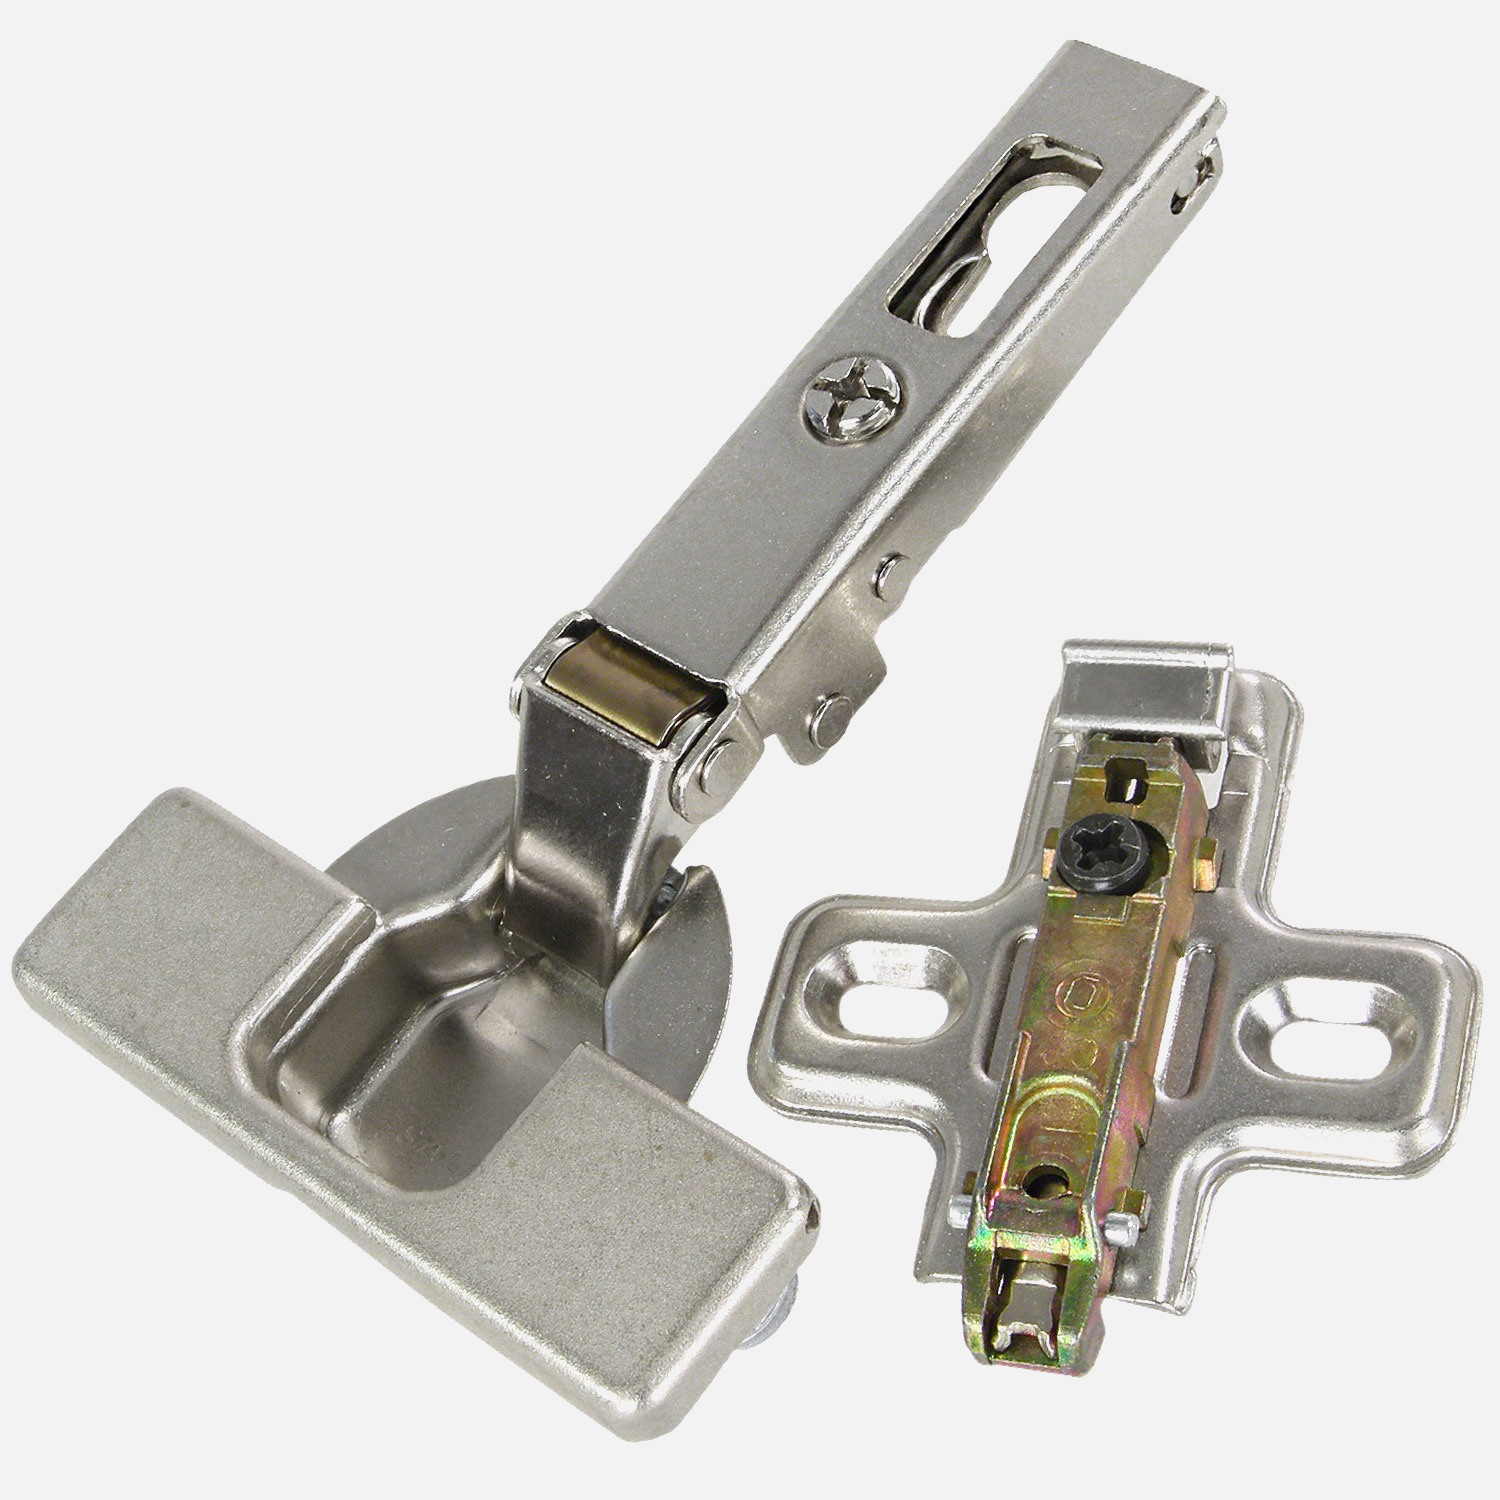 1 HSI Topfband - mit Clip und Schnellmontage - für Außentür - vernickelt - 35mm